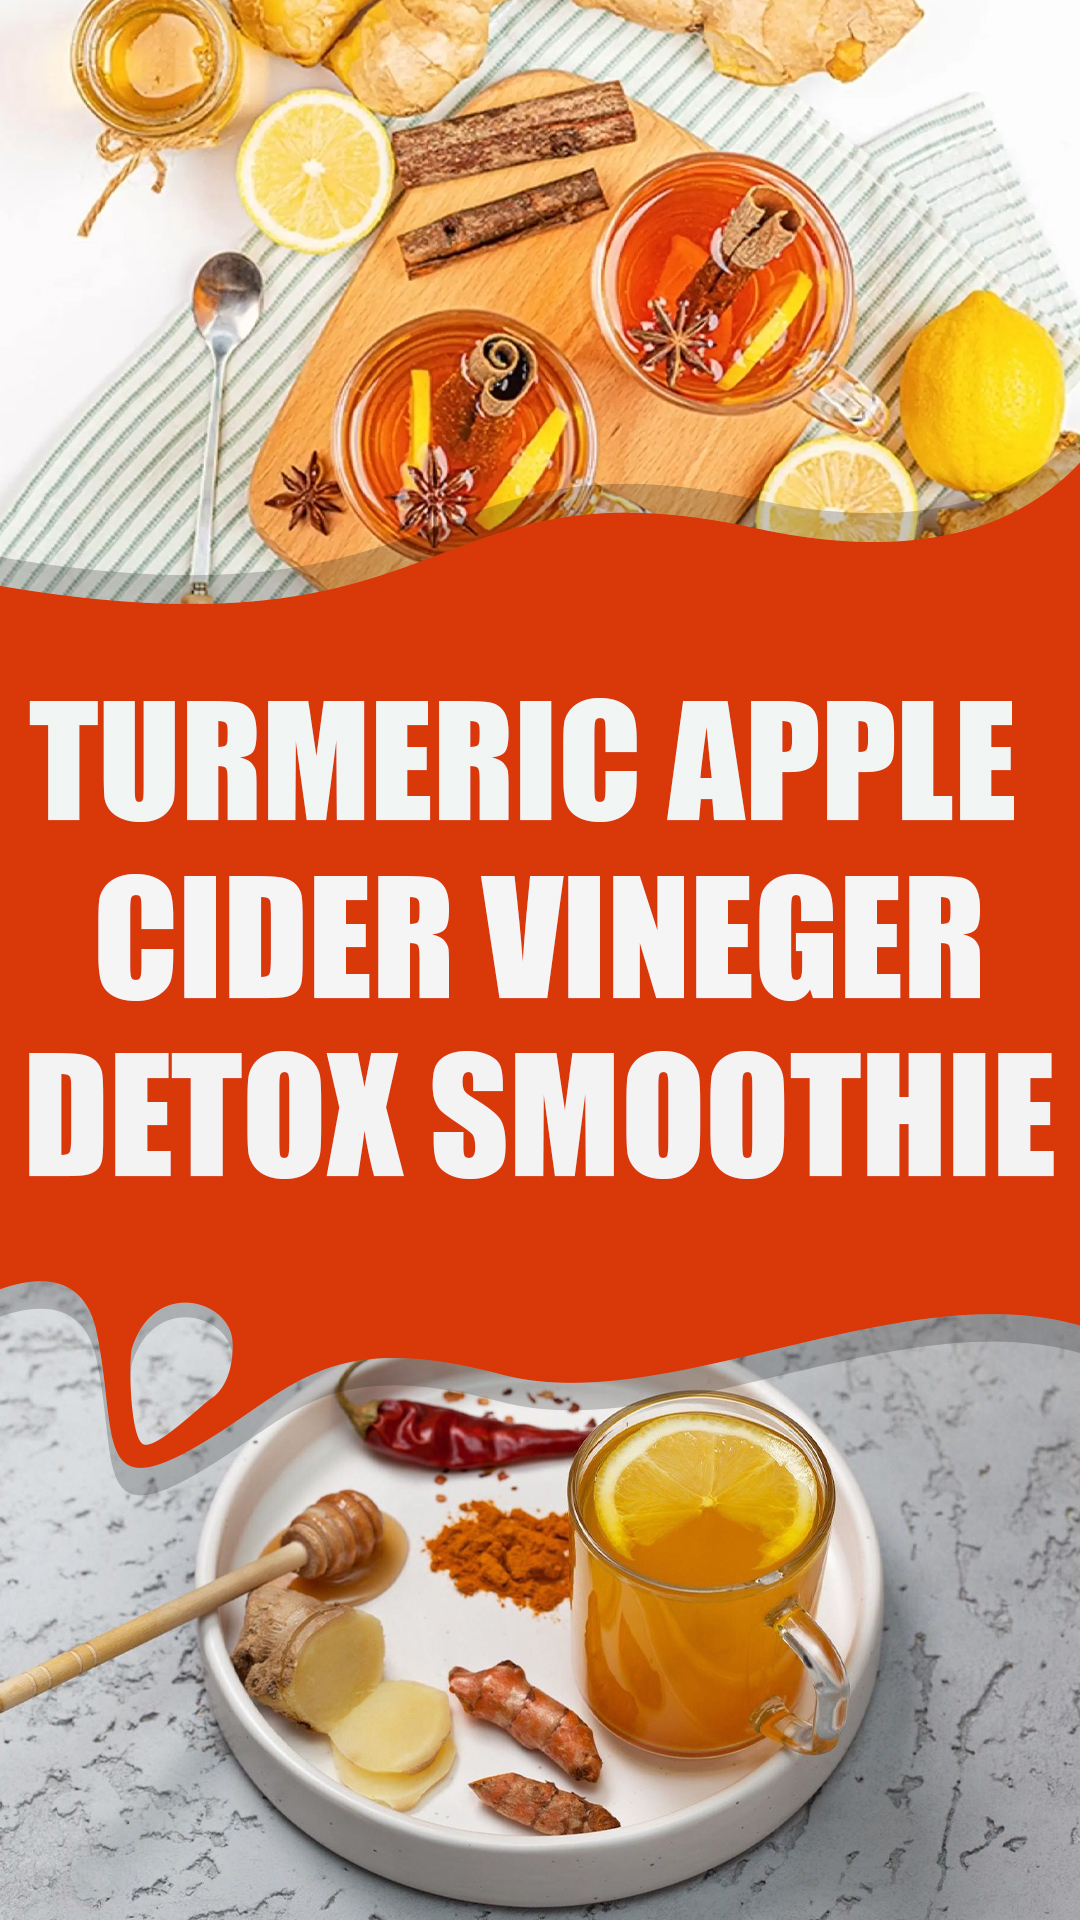 Turmeric Apple Cider Vinegar Detox Smoothie Recipe